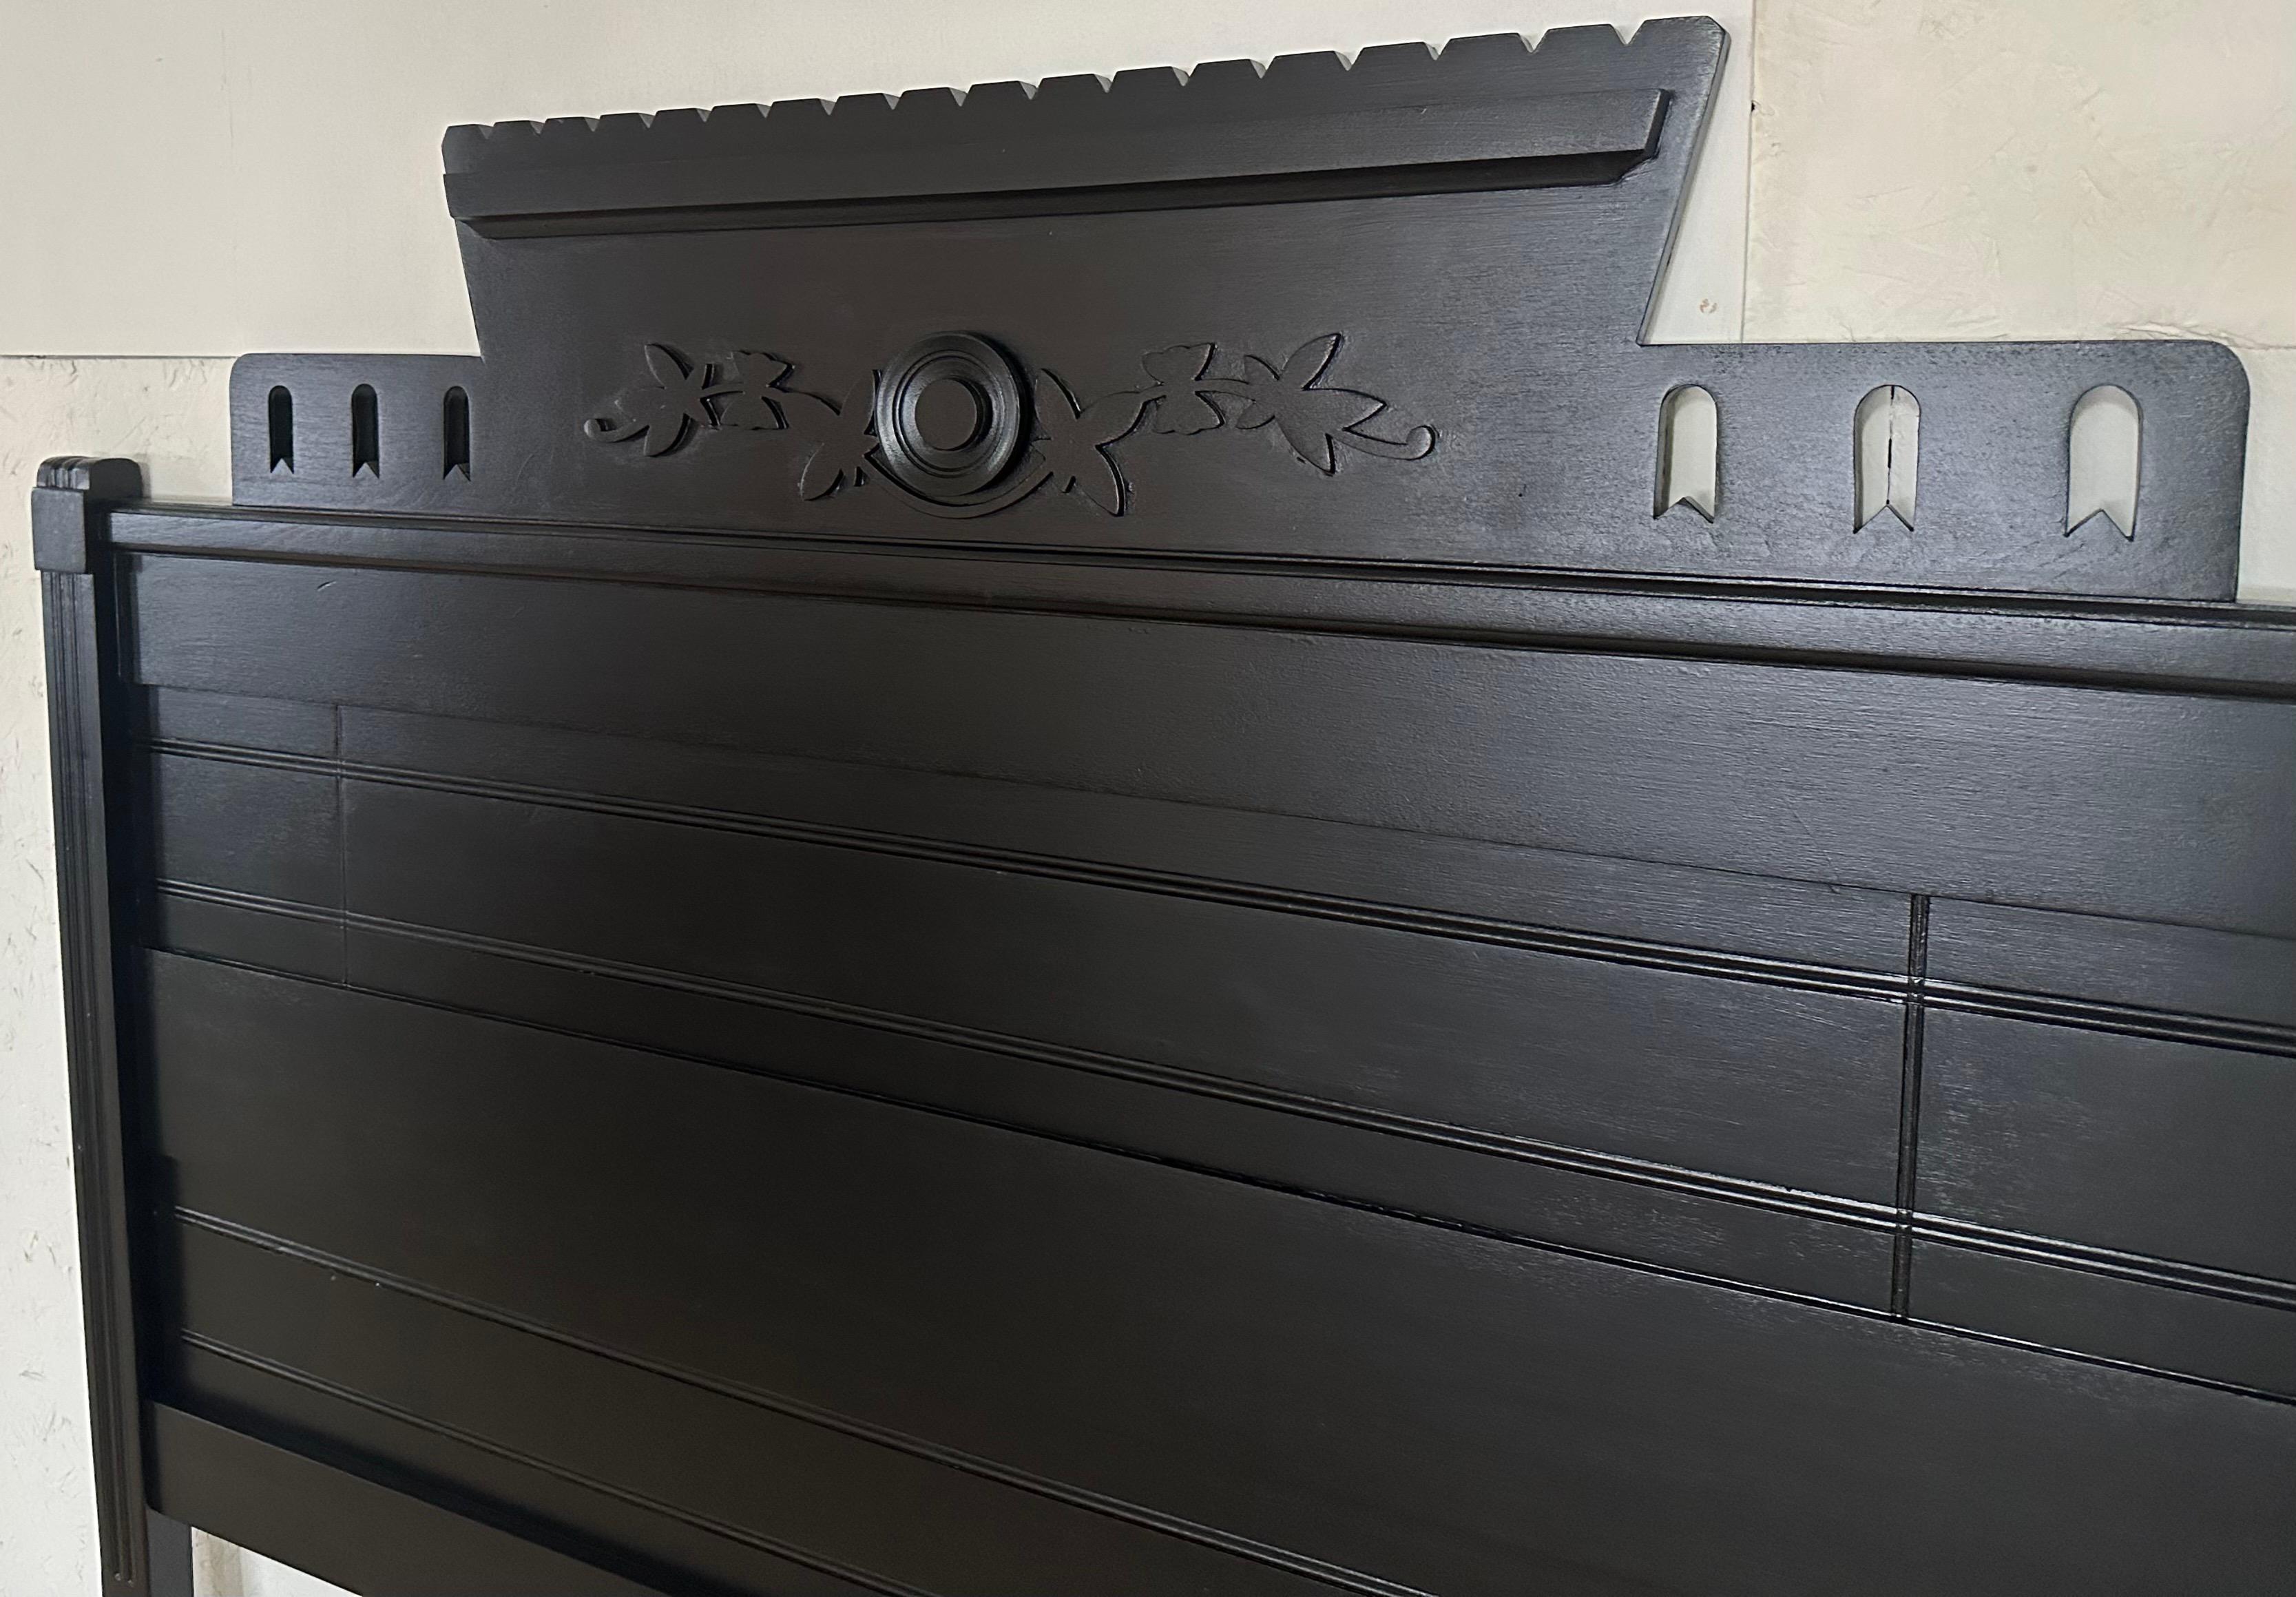 Un merveilleux exemple de mobilier de style Arts & Crafts de la période victorienne américaine. Il s'agit d'une tête de lit double en noyer, peinte en noir tendre. La tête de lit a été portée à 56